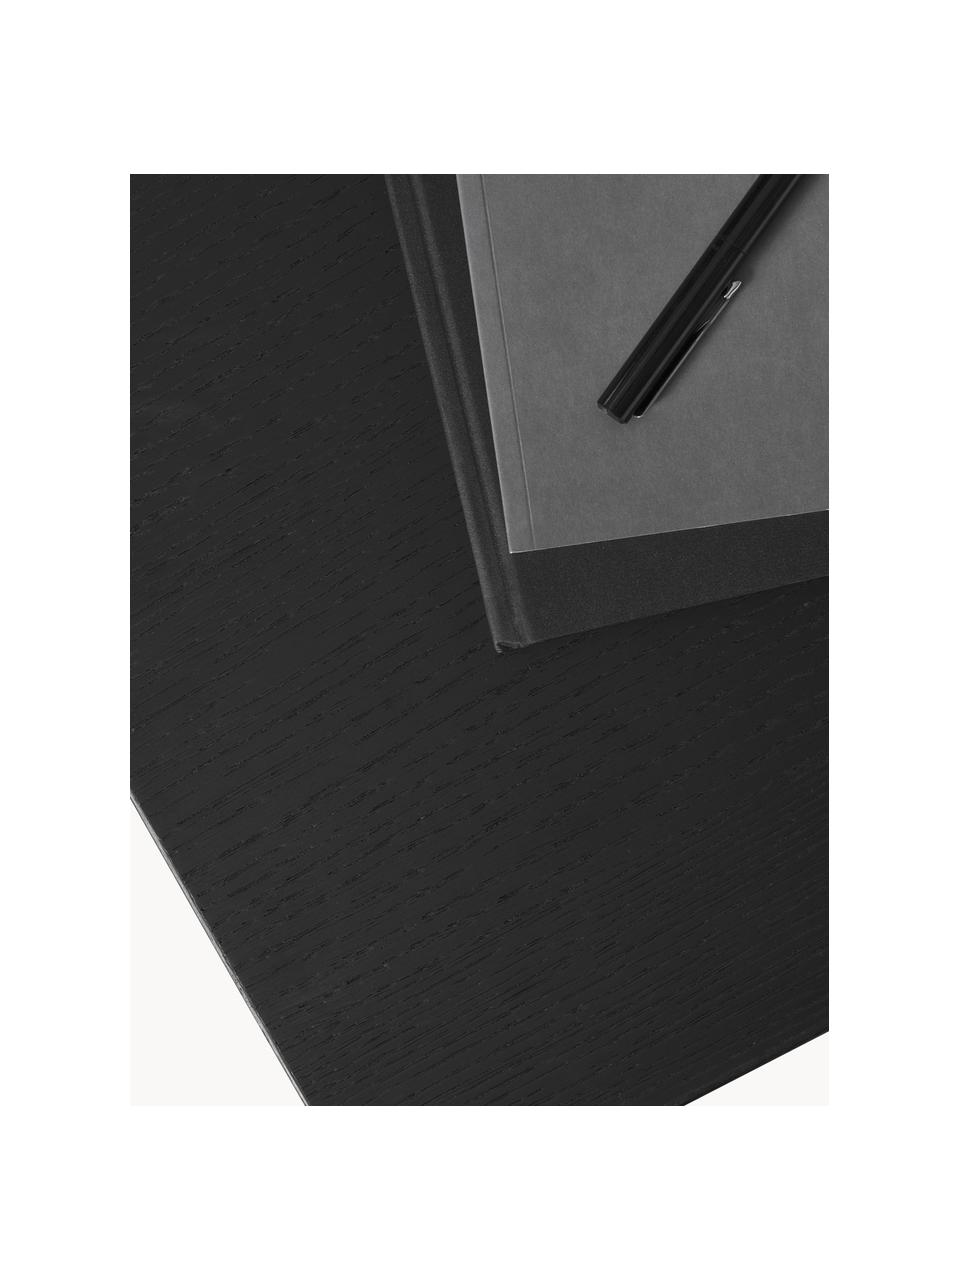 Holz-Couchtisch Toni, Mitteldichte Holzfaserplatte (MDF) mit Eichenholzfurnier, lackiert, Schwarz, B 100 x T 55 cm